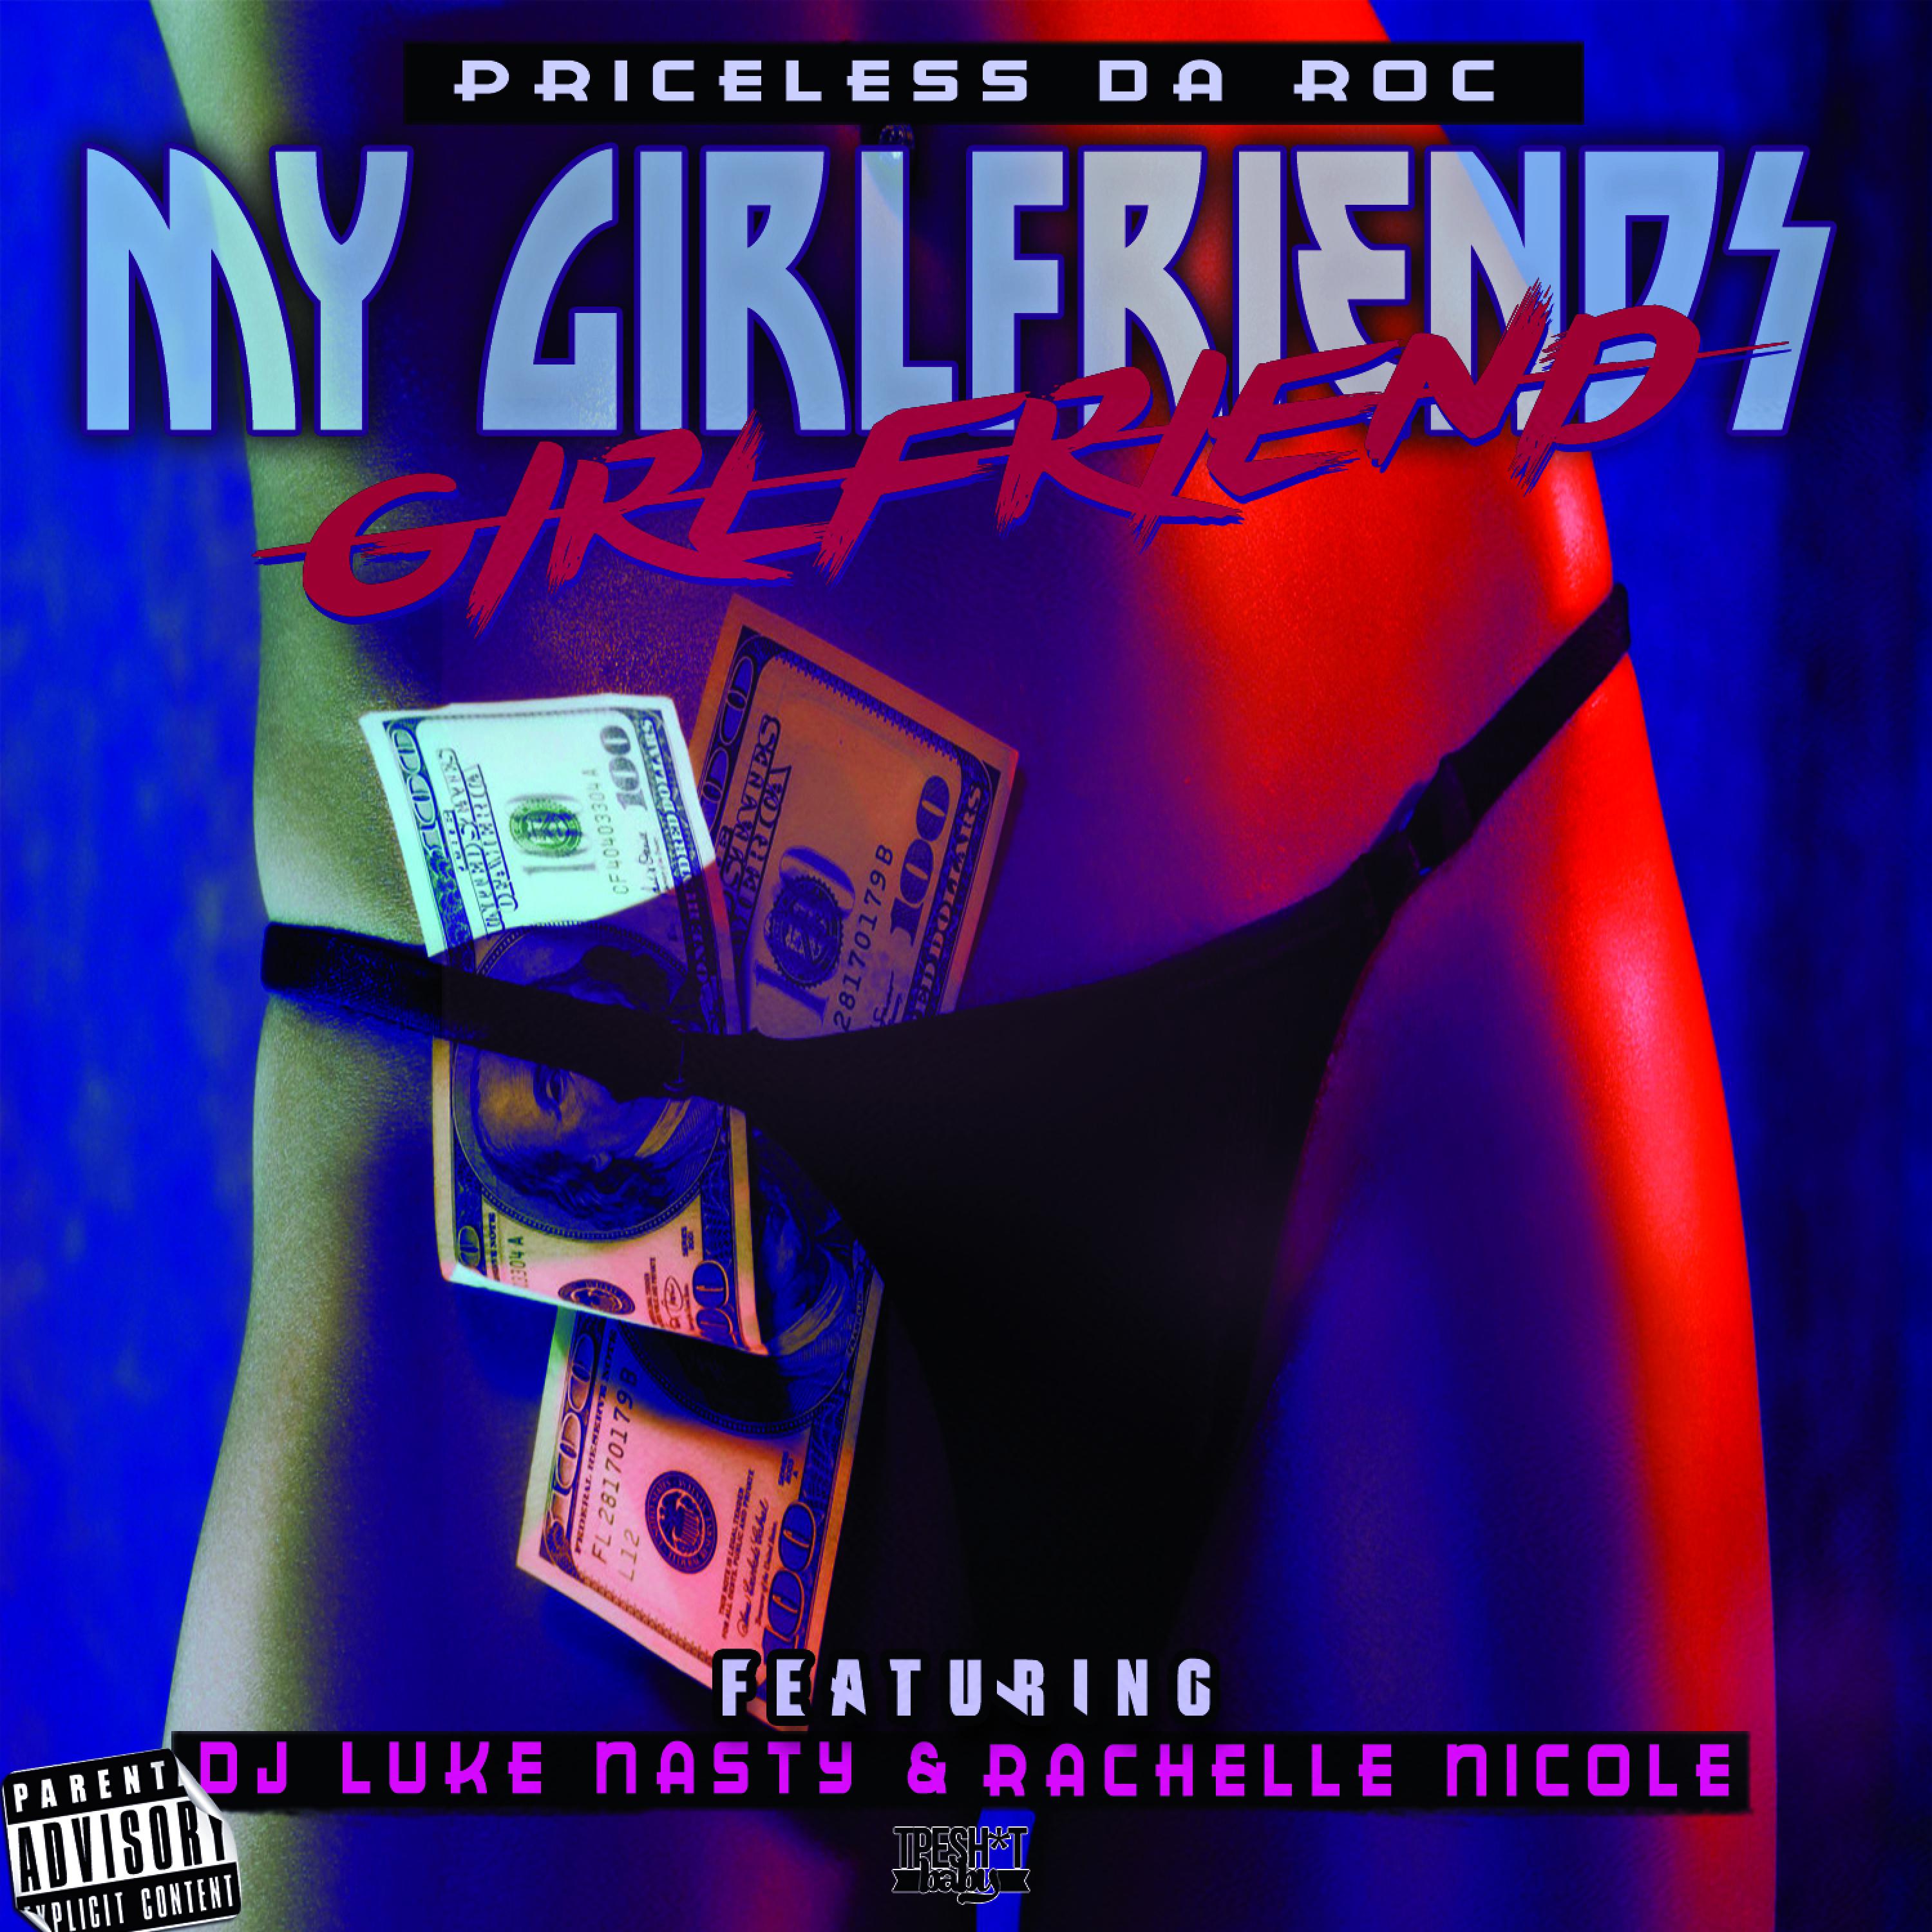 My Girlfriend's Girlfriend (feat. DJ Luke Nasty & Rachelle Nicole) - Single